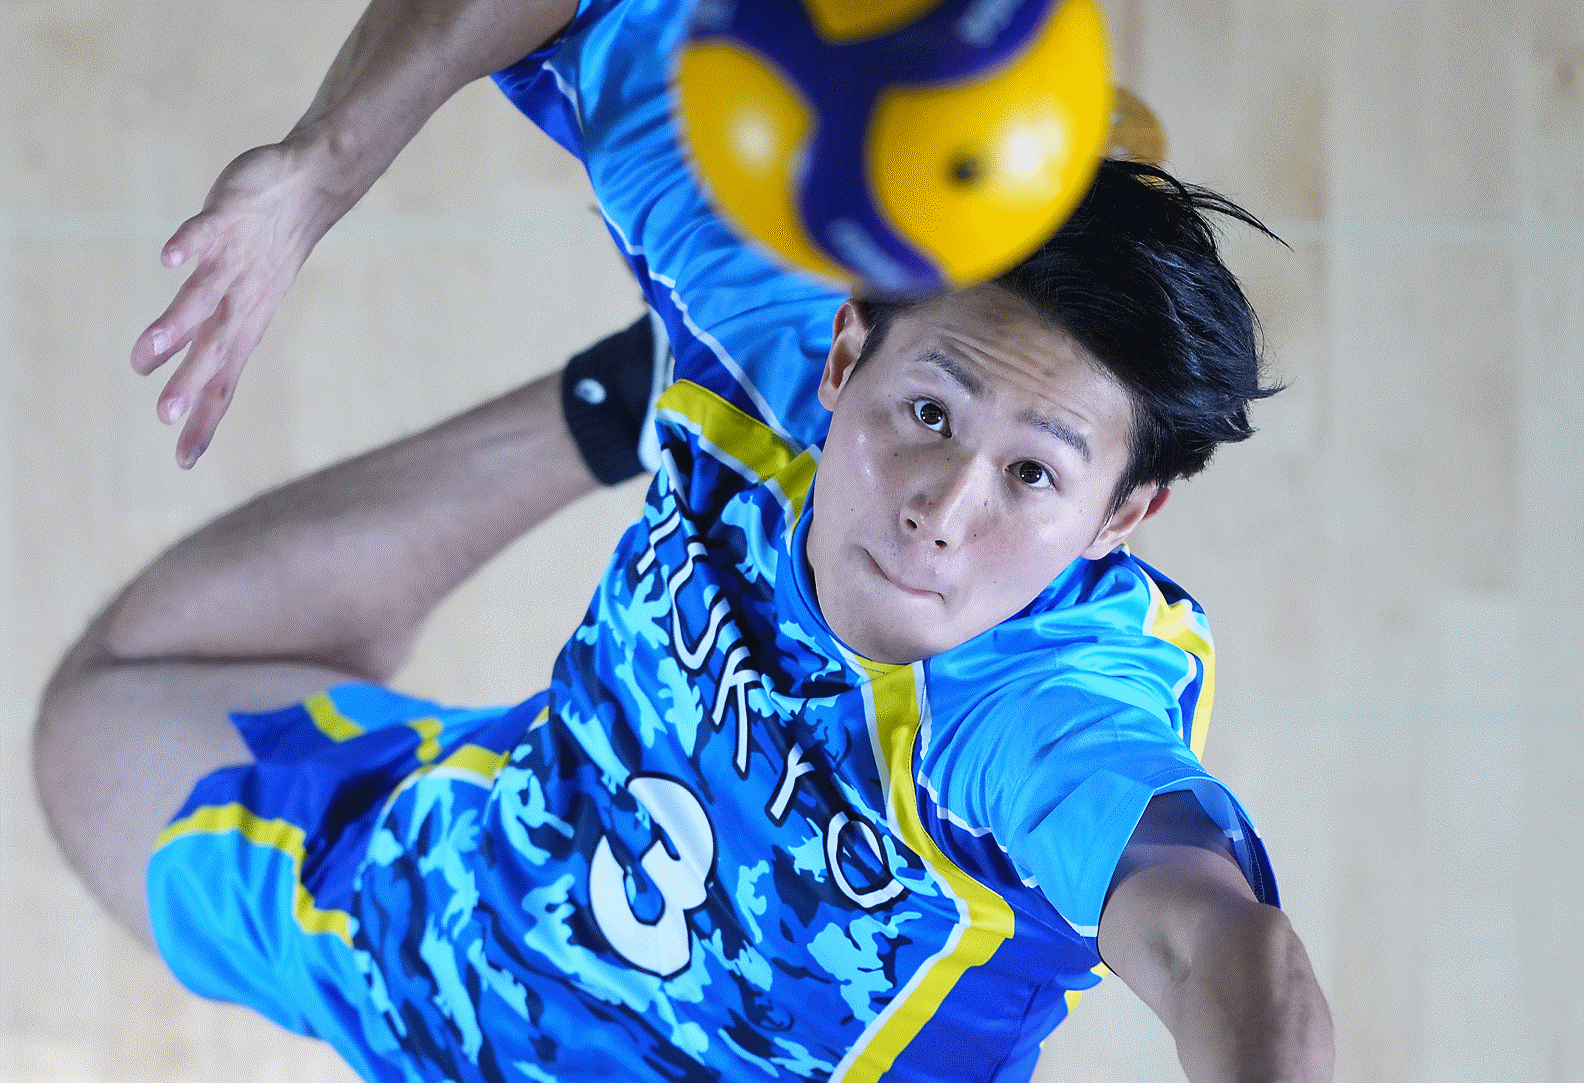 Deportista realizando un saque de vóleibol